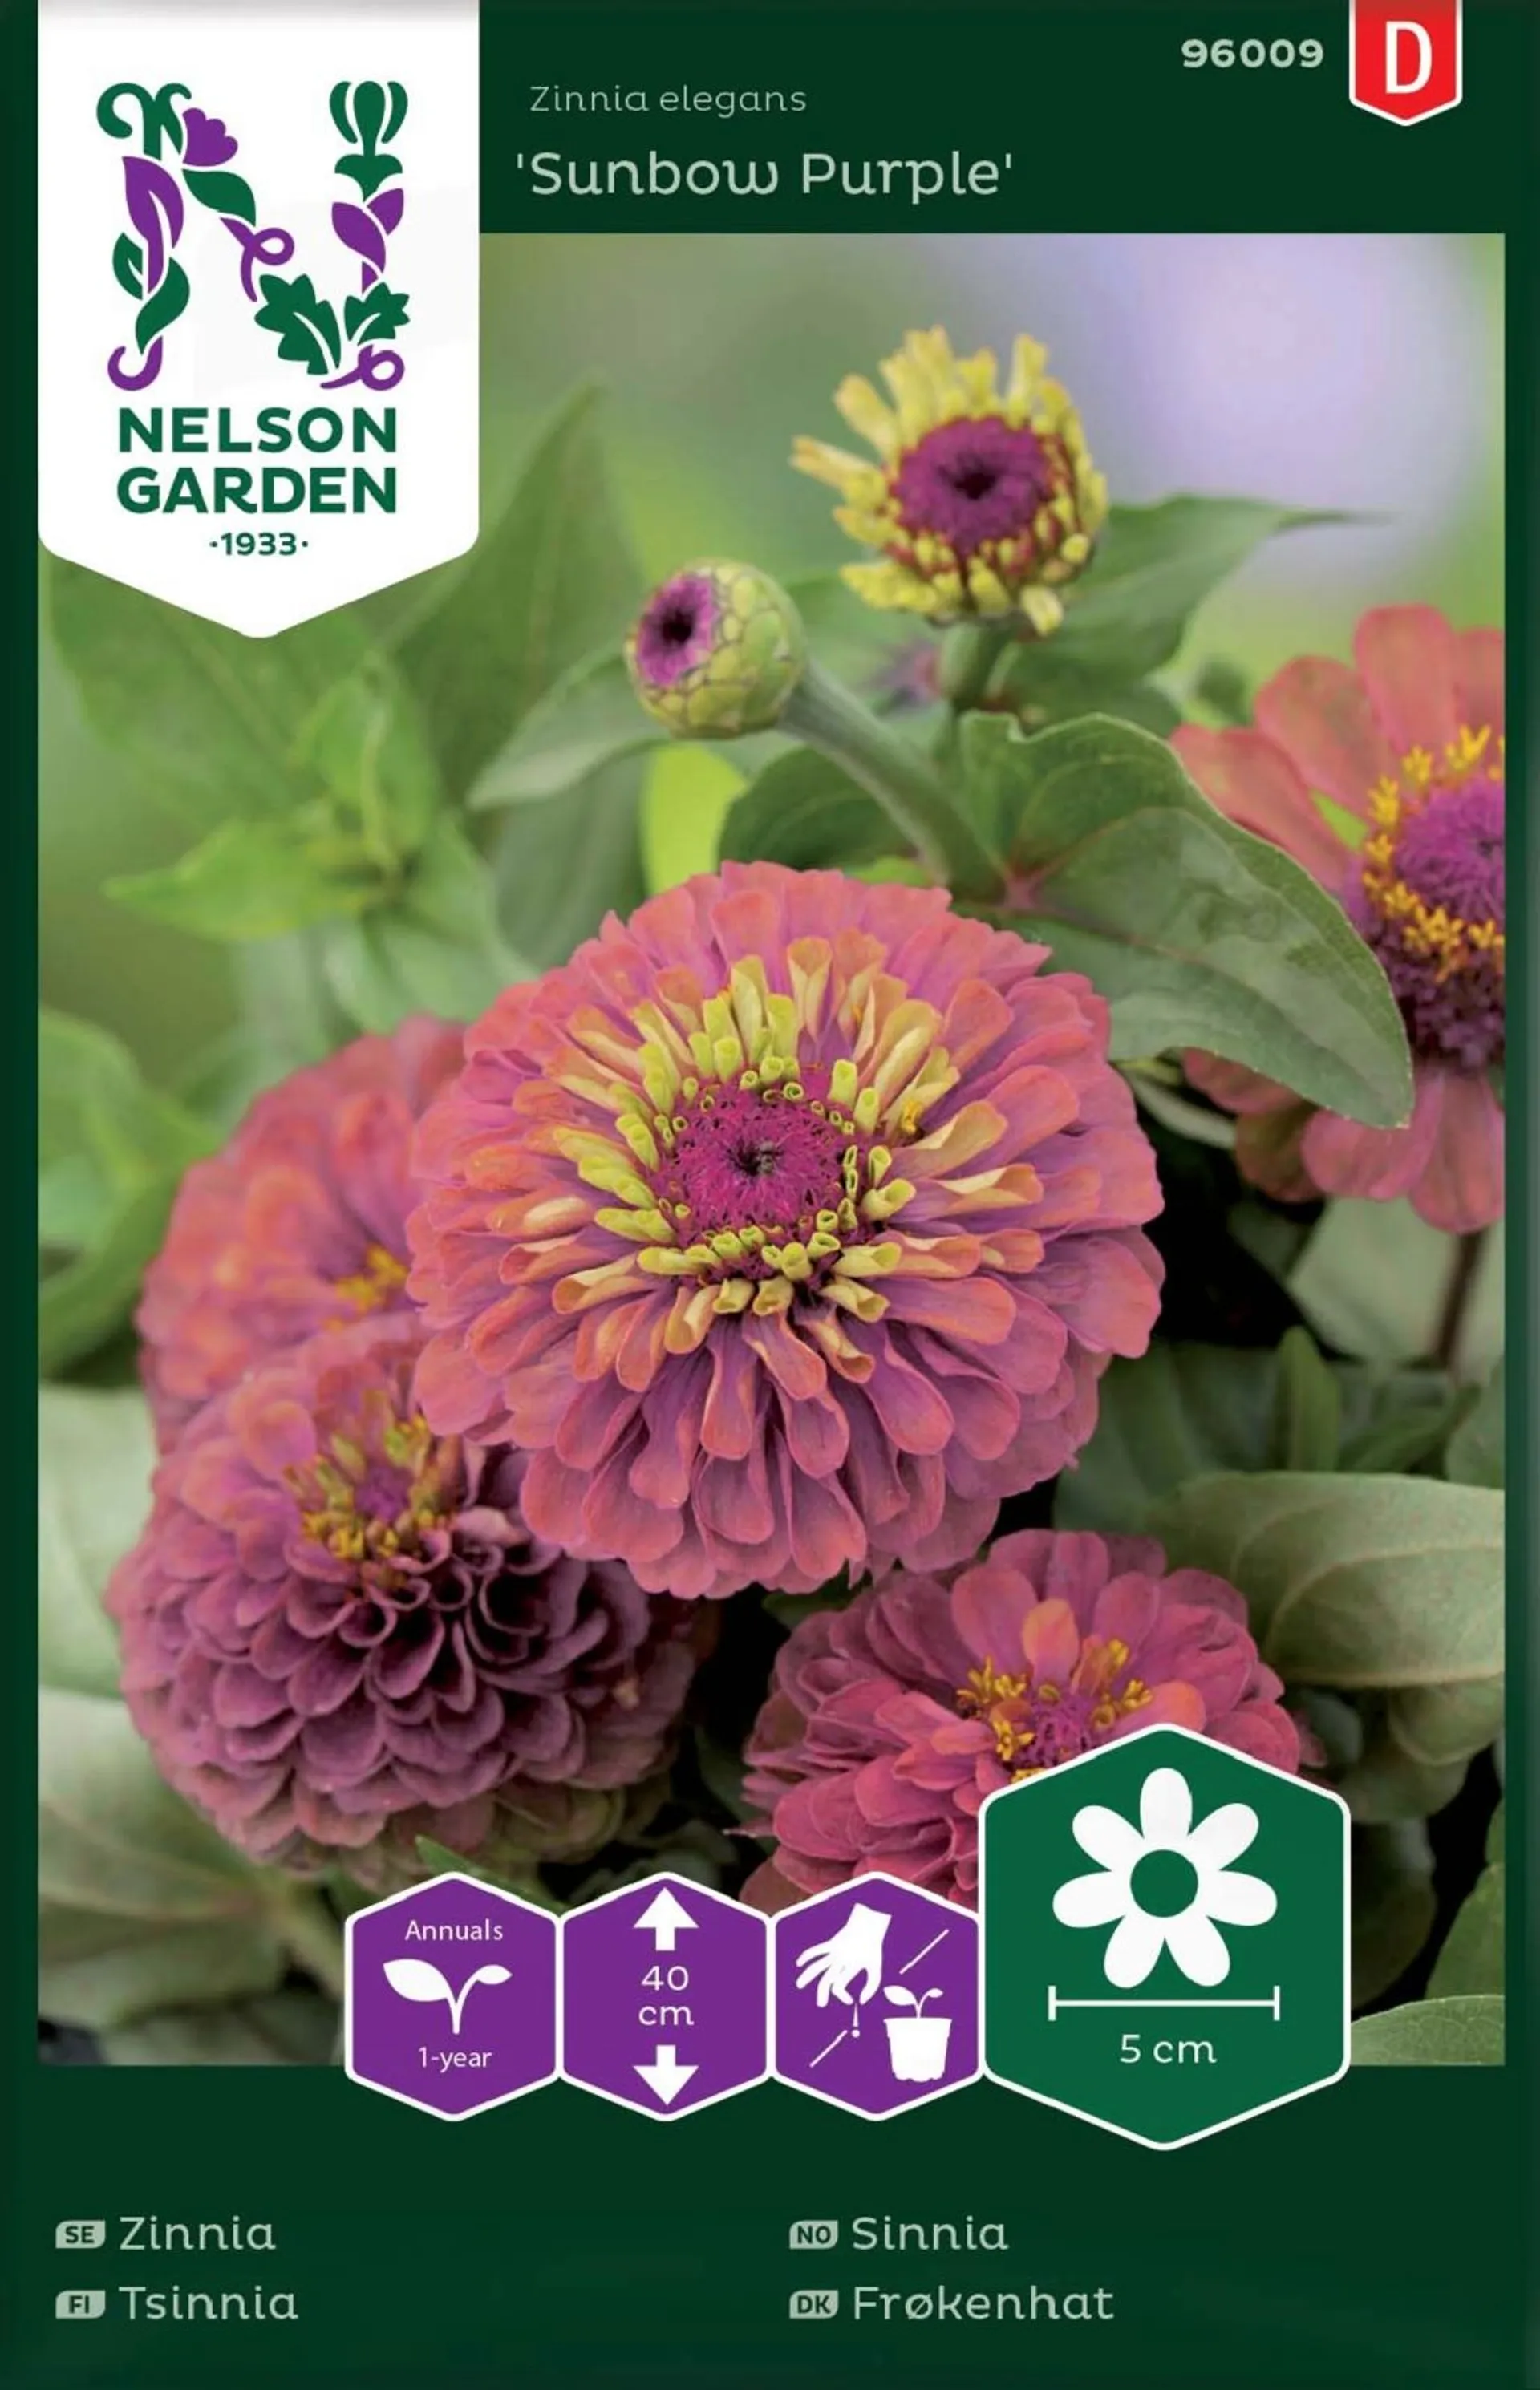 Nelson Garden Siemen Tsinnia, Iso-, Sunbow Purple